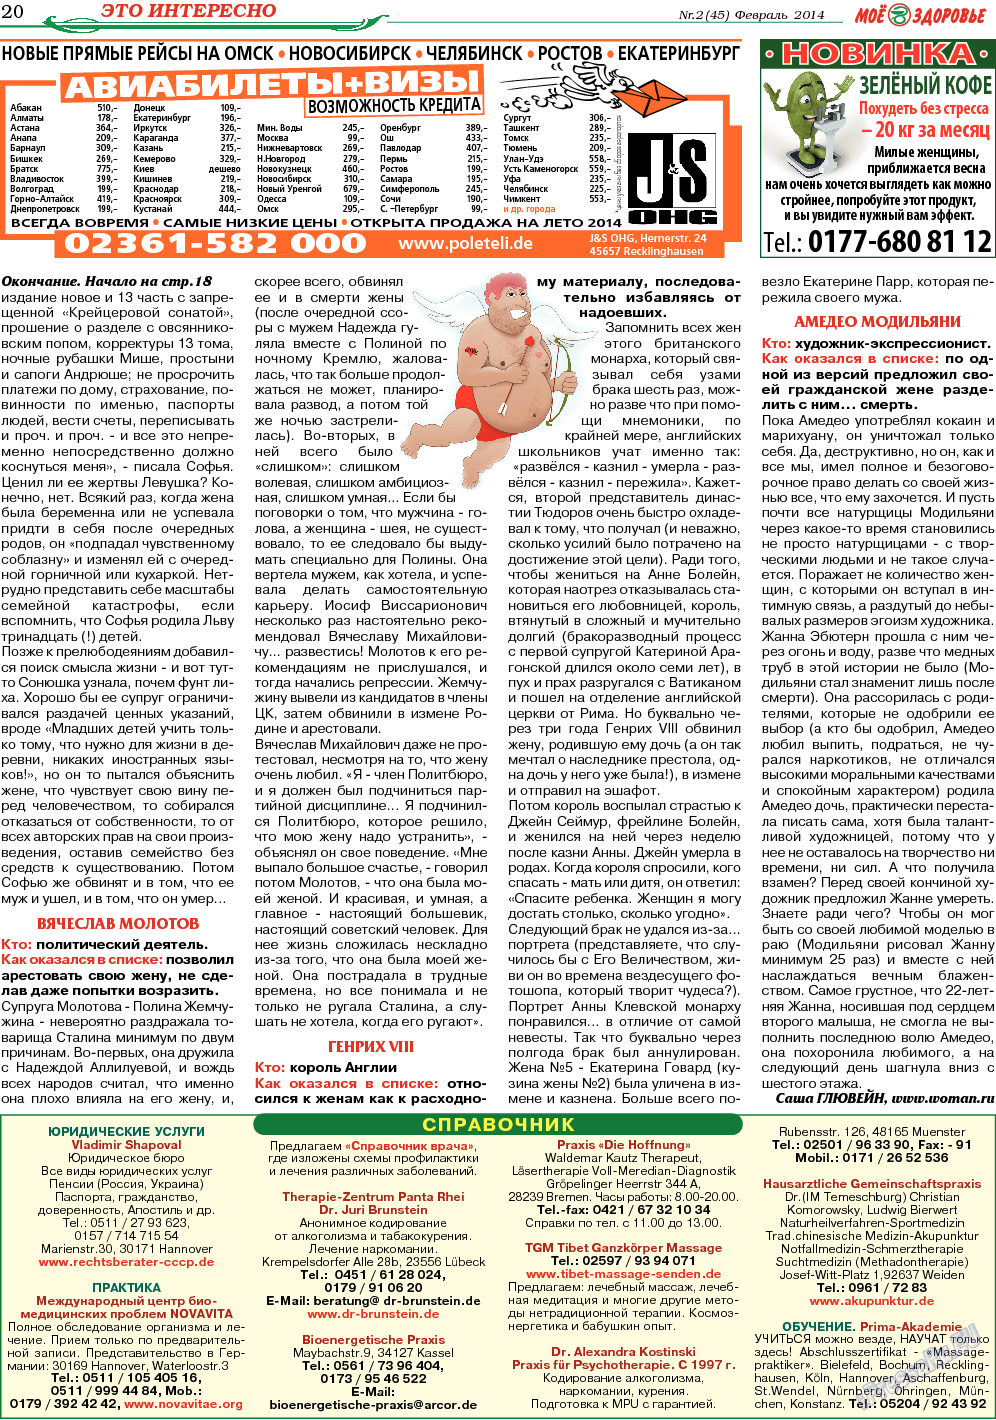 Кругозор (газета). 2014 год, номер 2, стр. 20